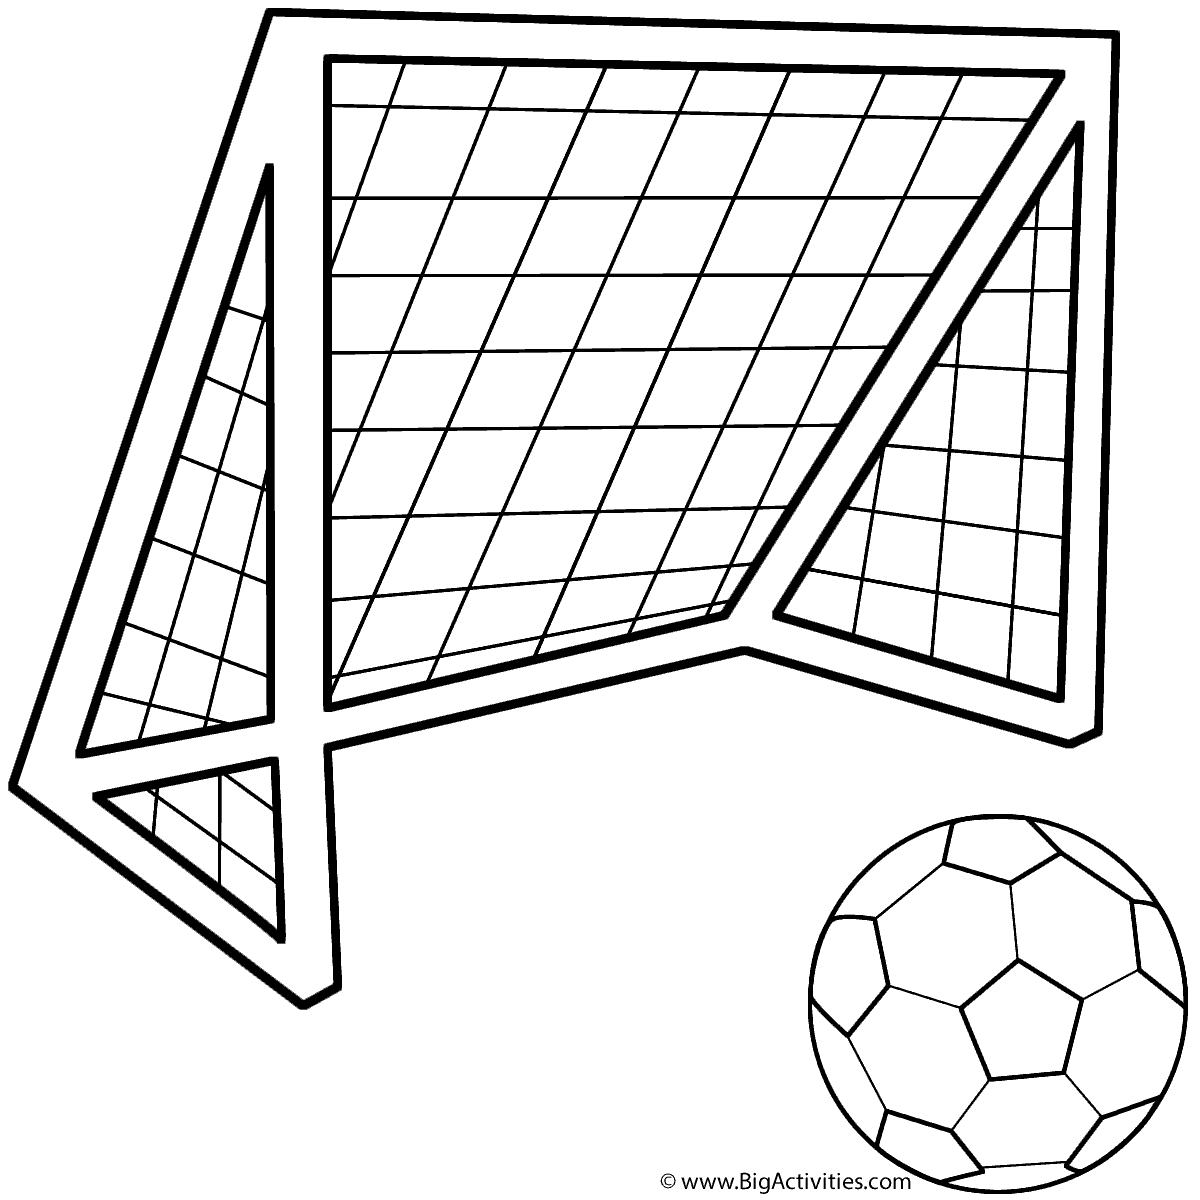 Soccer ball with soccer net